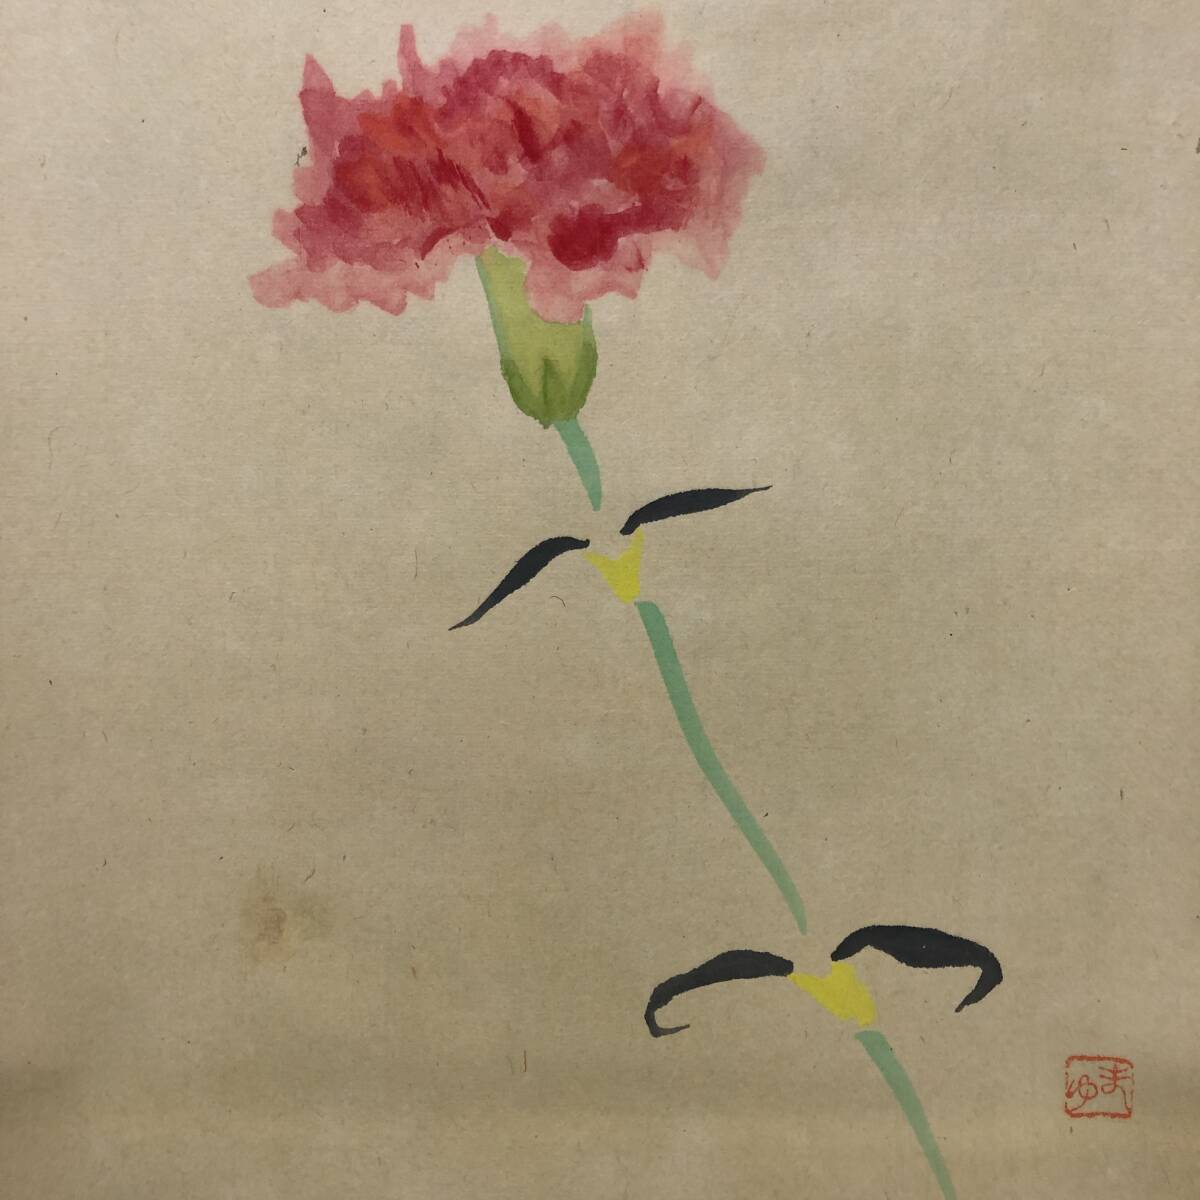 Reproduction // Mayumi / Oeillet / Fleur / Artisanat / Hotei-ya Hanging Scroll A-746, Peinture, Peinture japonaise, Fleurs et oiseaux, Faune